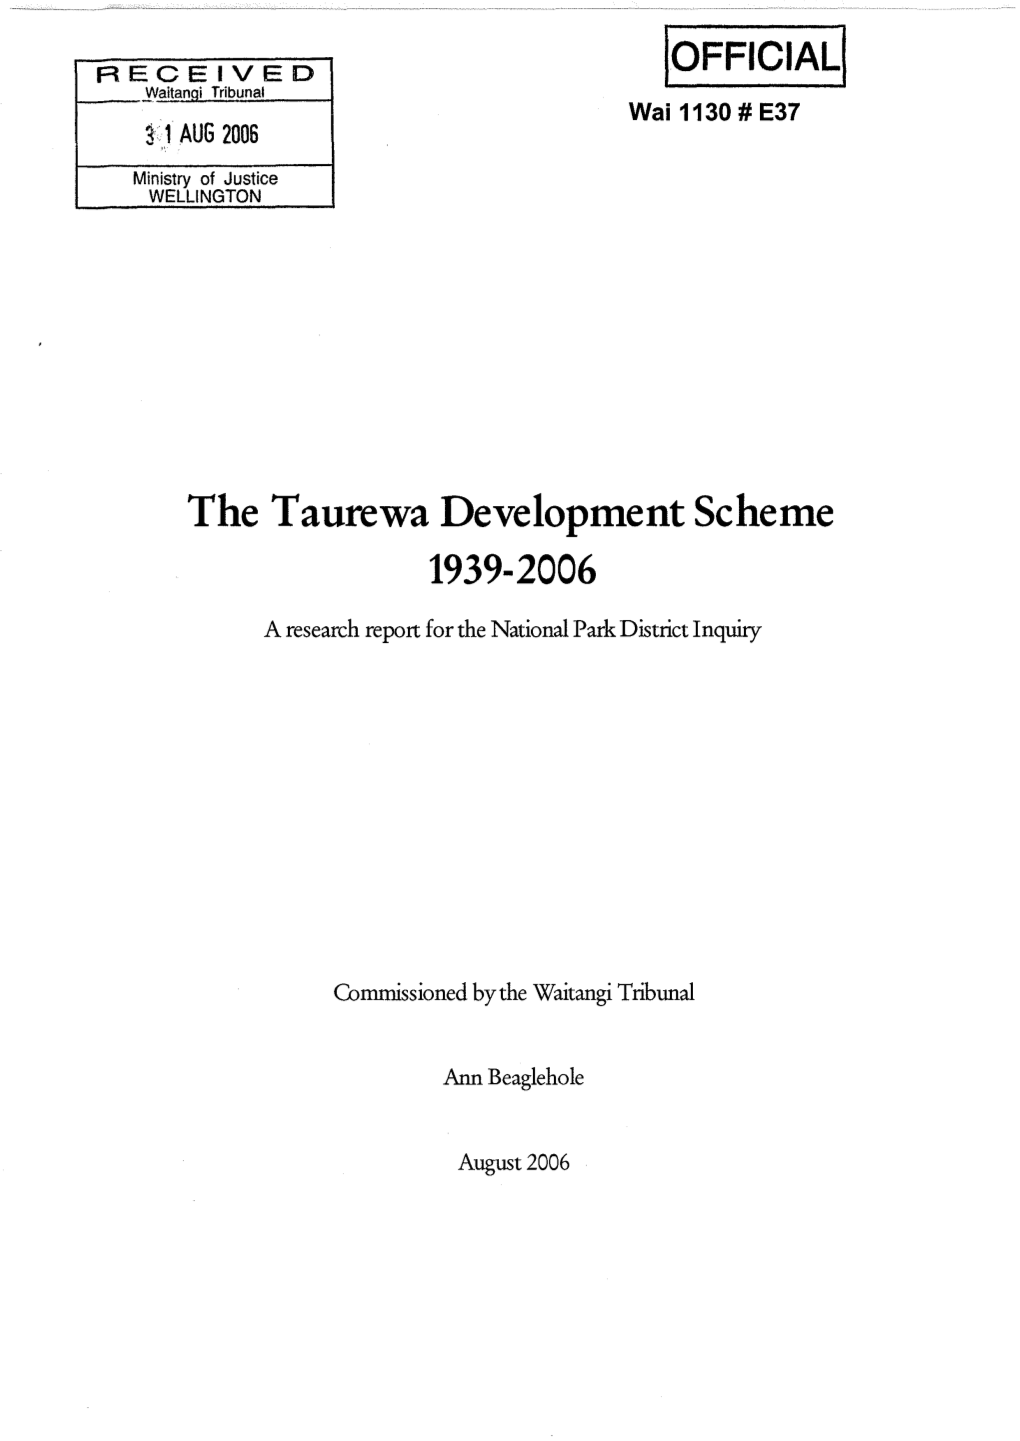 The Taurewa Development Scheme 1939-2006